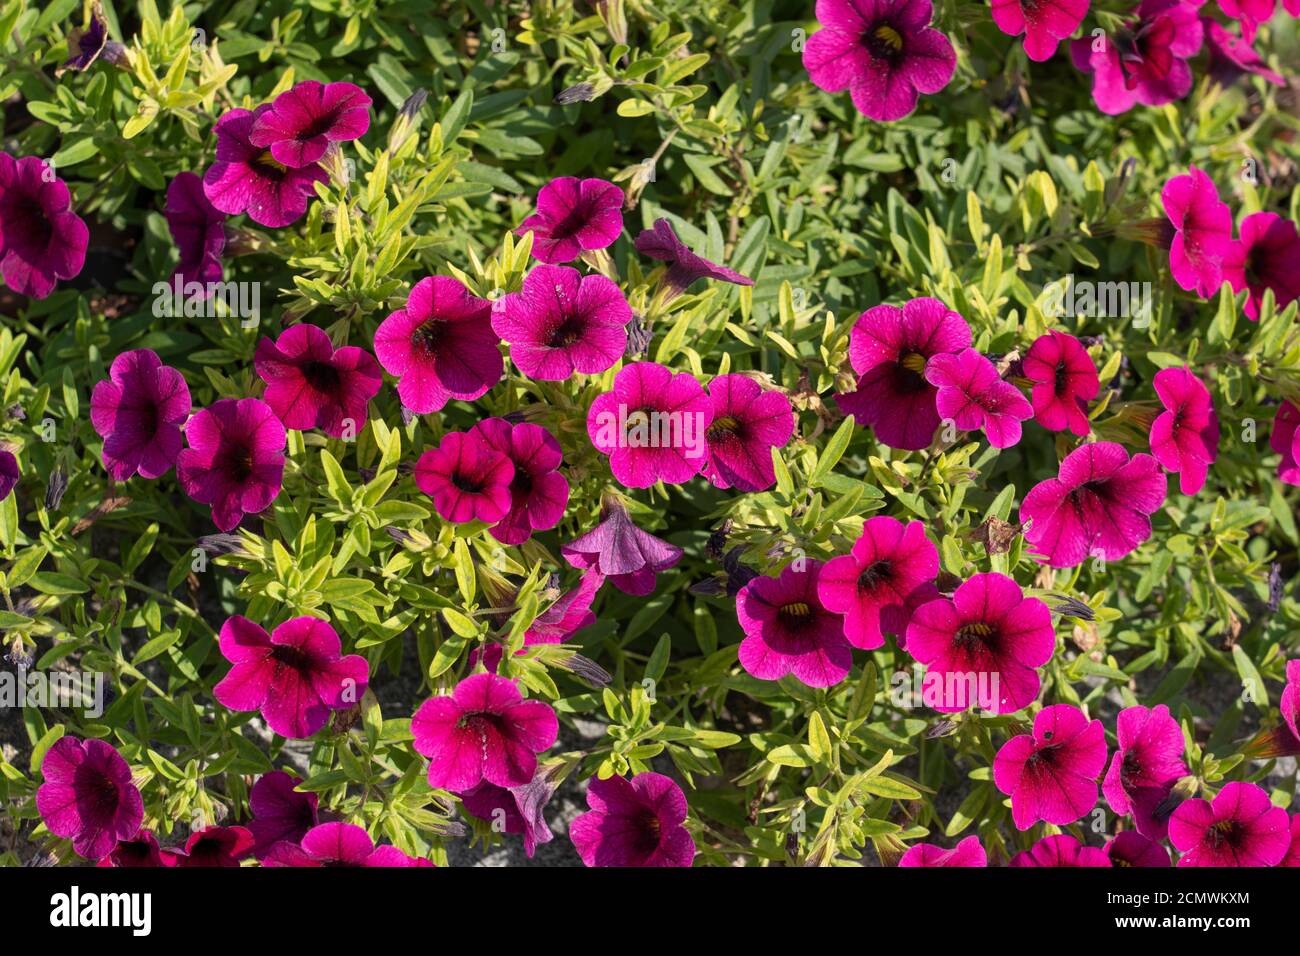 Fleurs roses magenta de Calibrachoa parviflora en plein soleil, une plante à fleurs dans la famille des nutShades connue sous le nom commun de la station balnéaire de petunia Banque D'Images